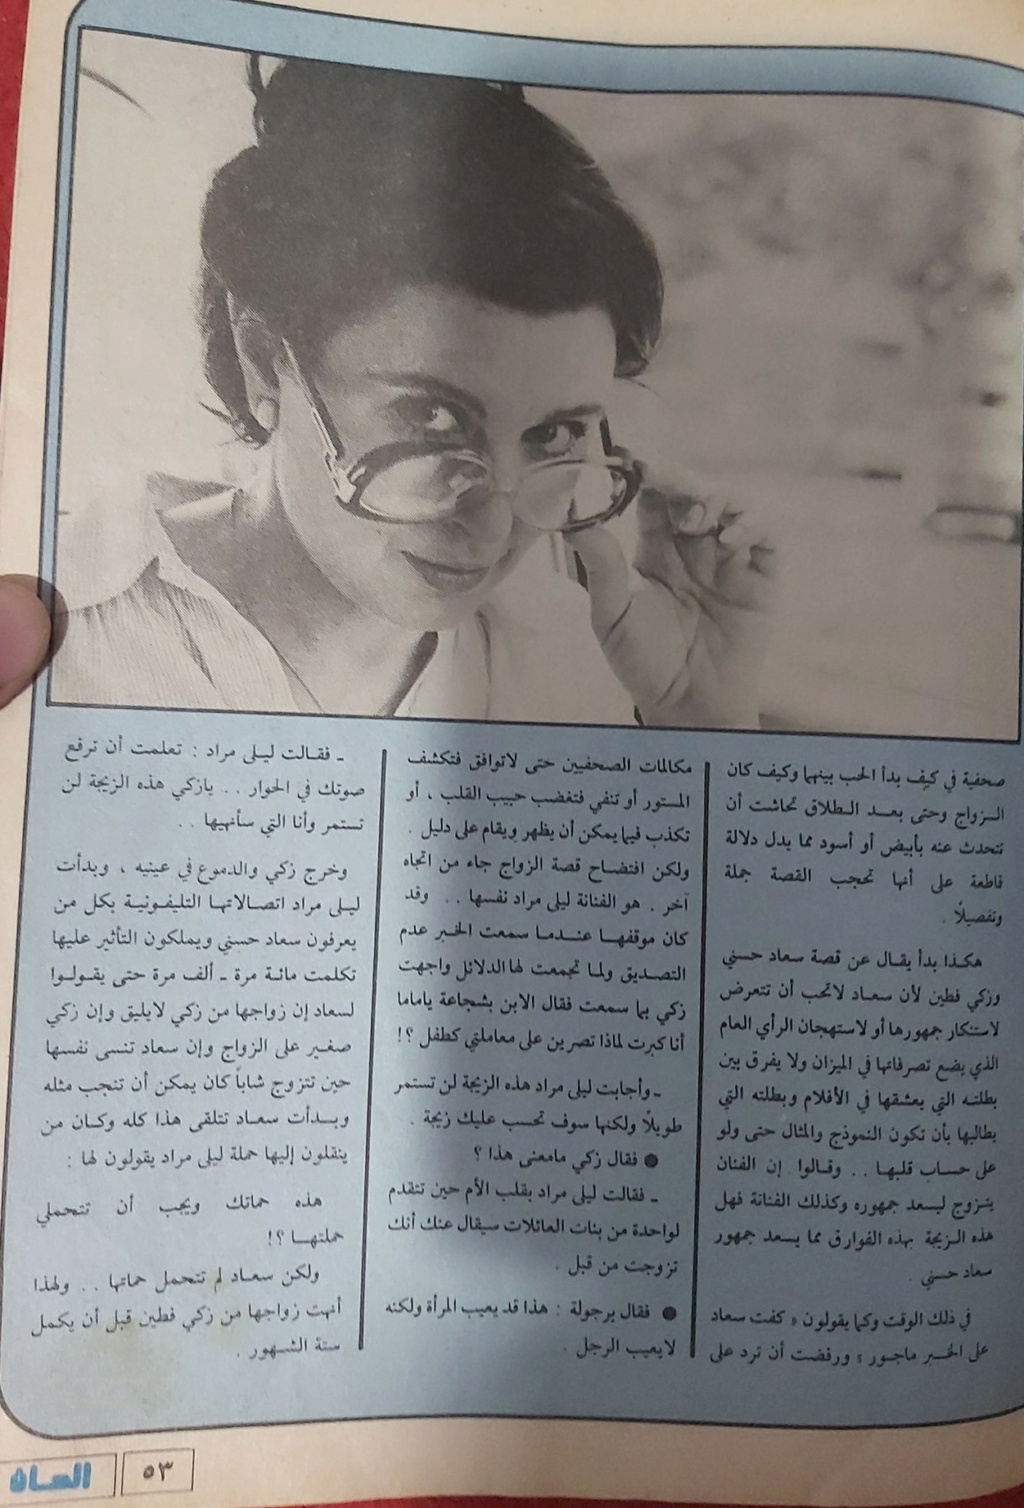 صحفي - مقال صحفي : سعاد حسني .. تزوجت ثلاث مرات .. وأحبت عشرات المرات !! 1987 م 513